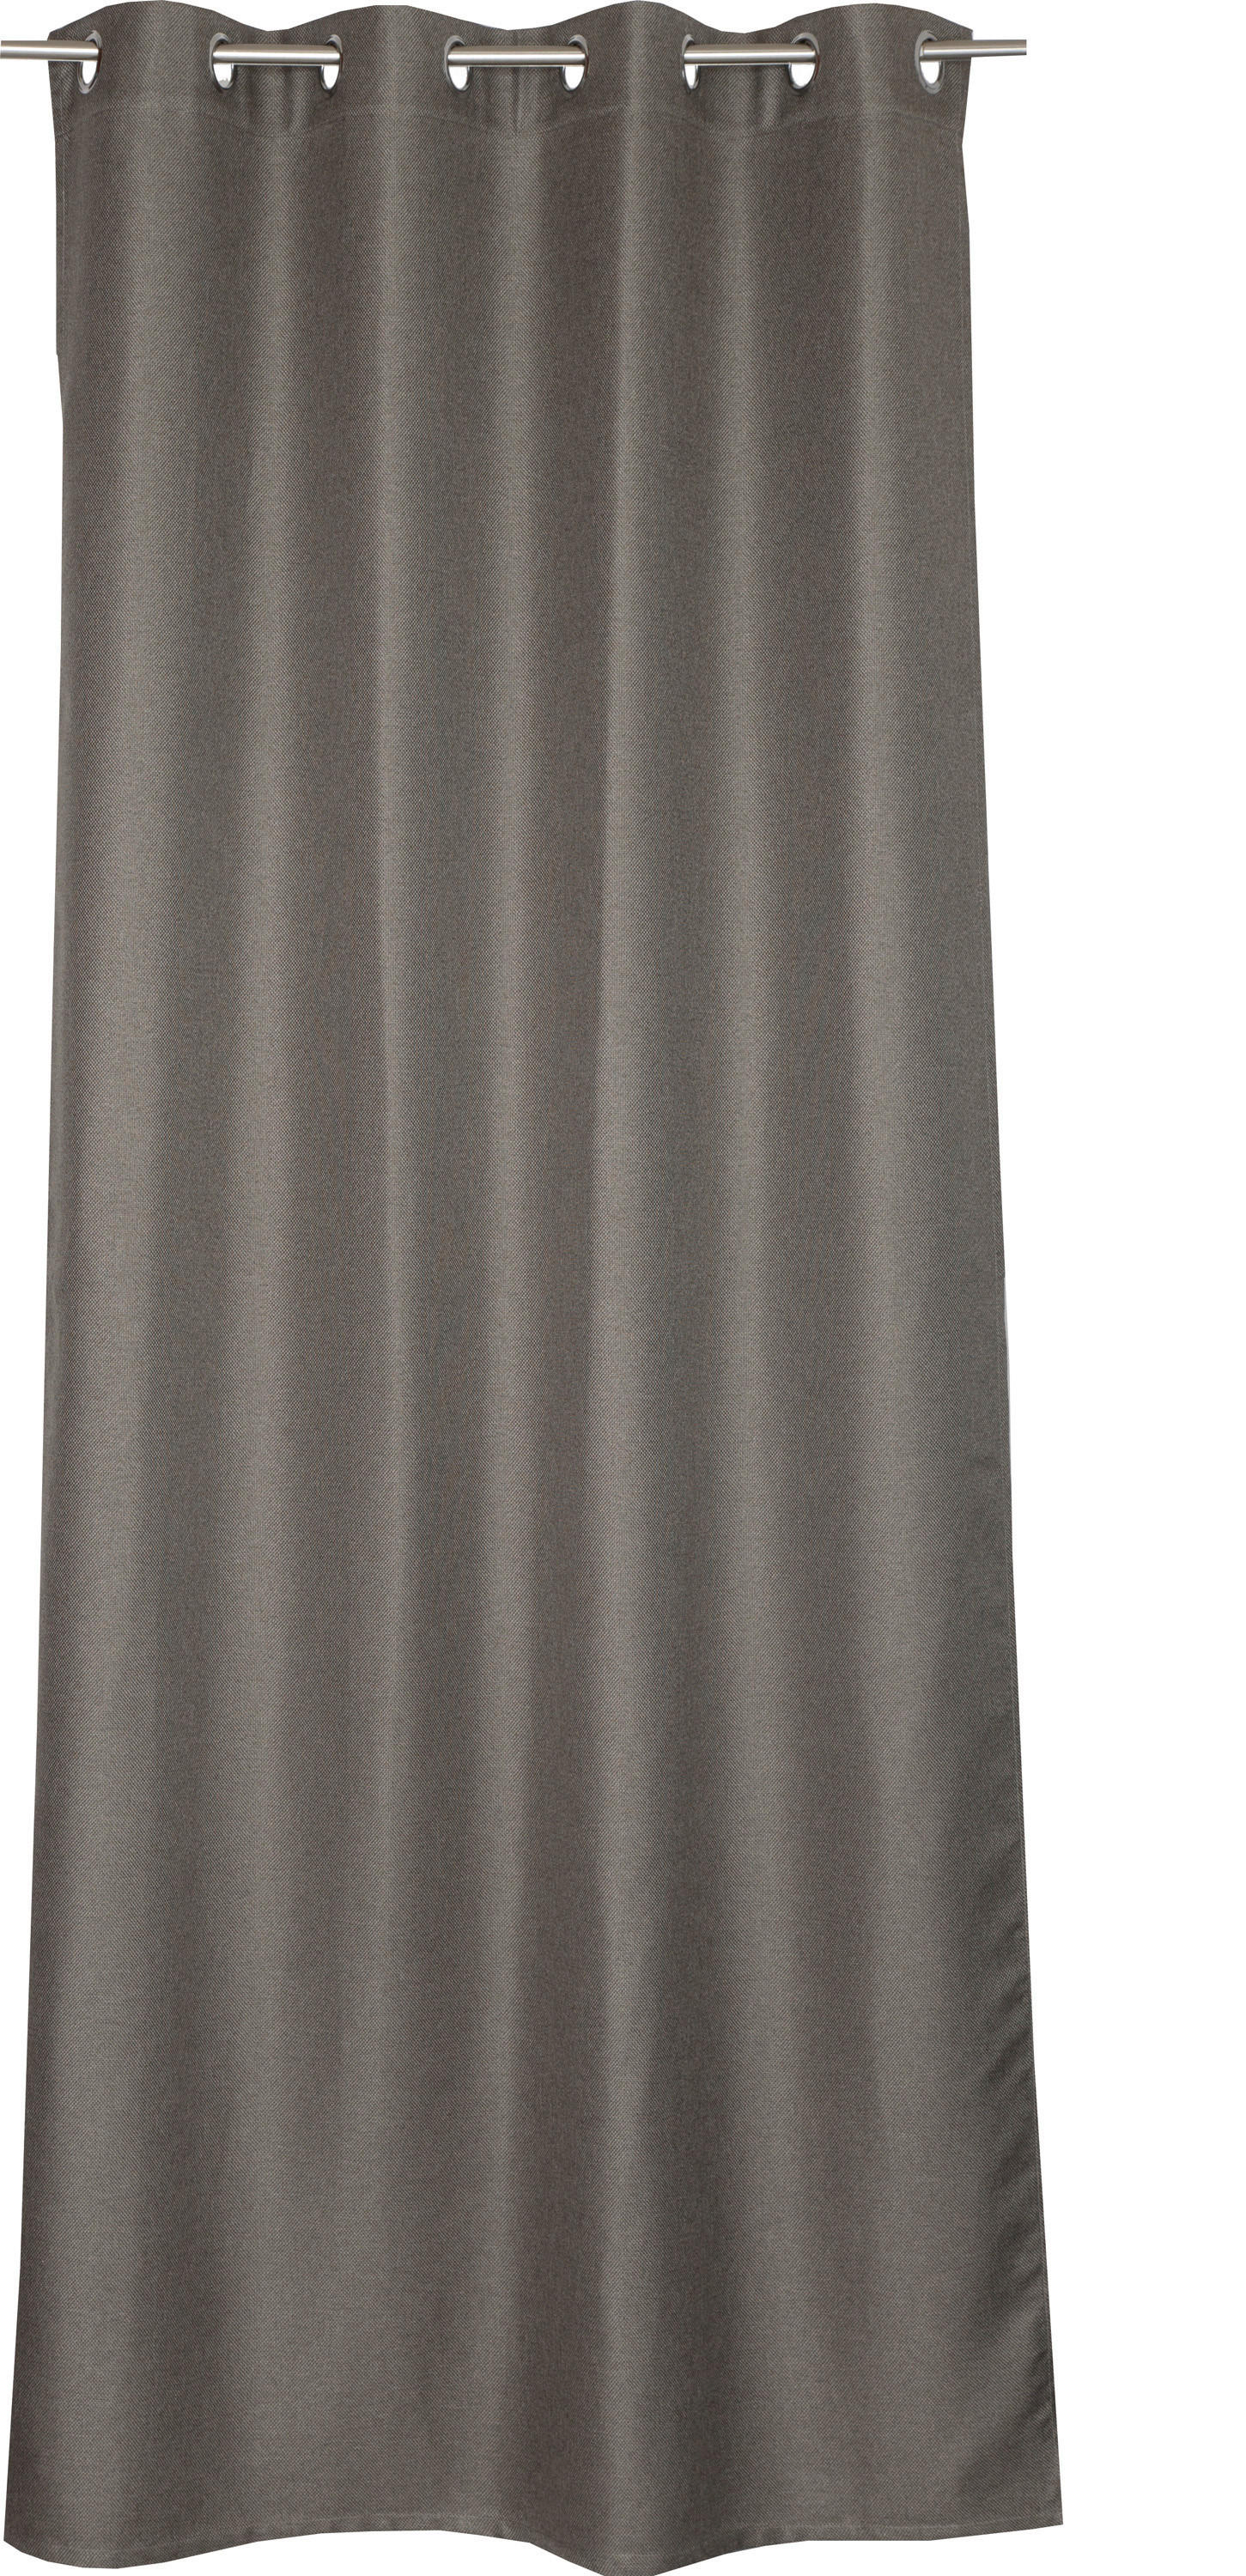 ÖSENSCHAL Opaco black-out (lichtundurchlässig) 140/250 cm   - Braun, Basics, Textil (140/250cm) - Schöner Wohnen